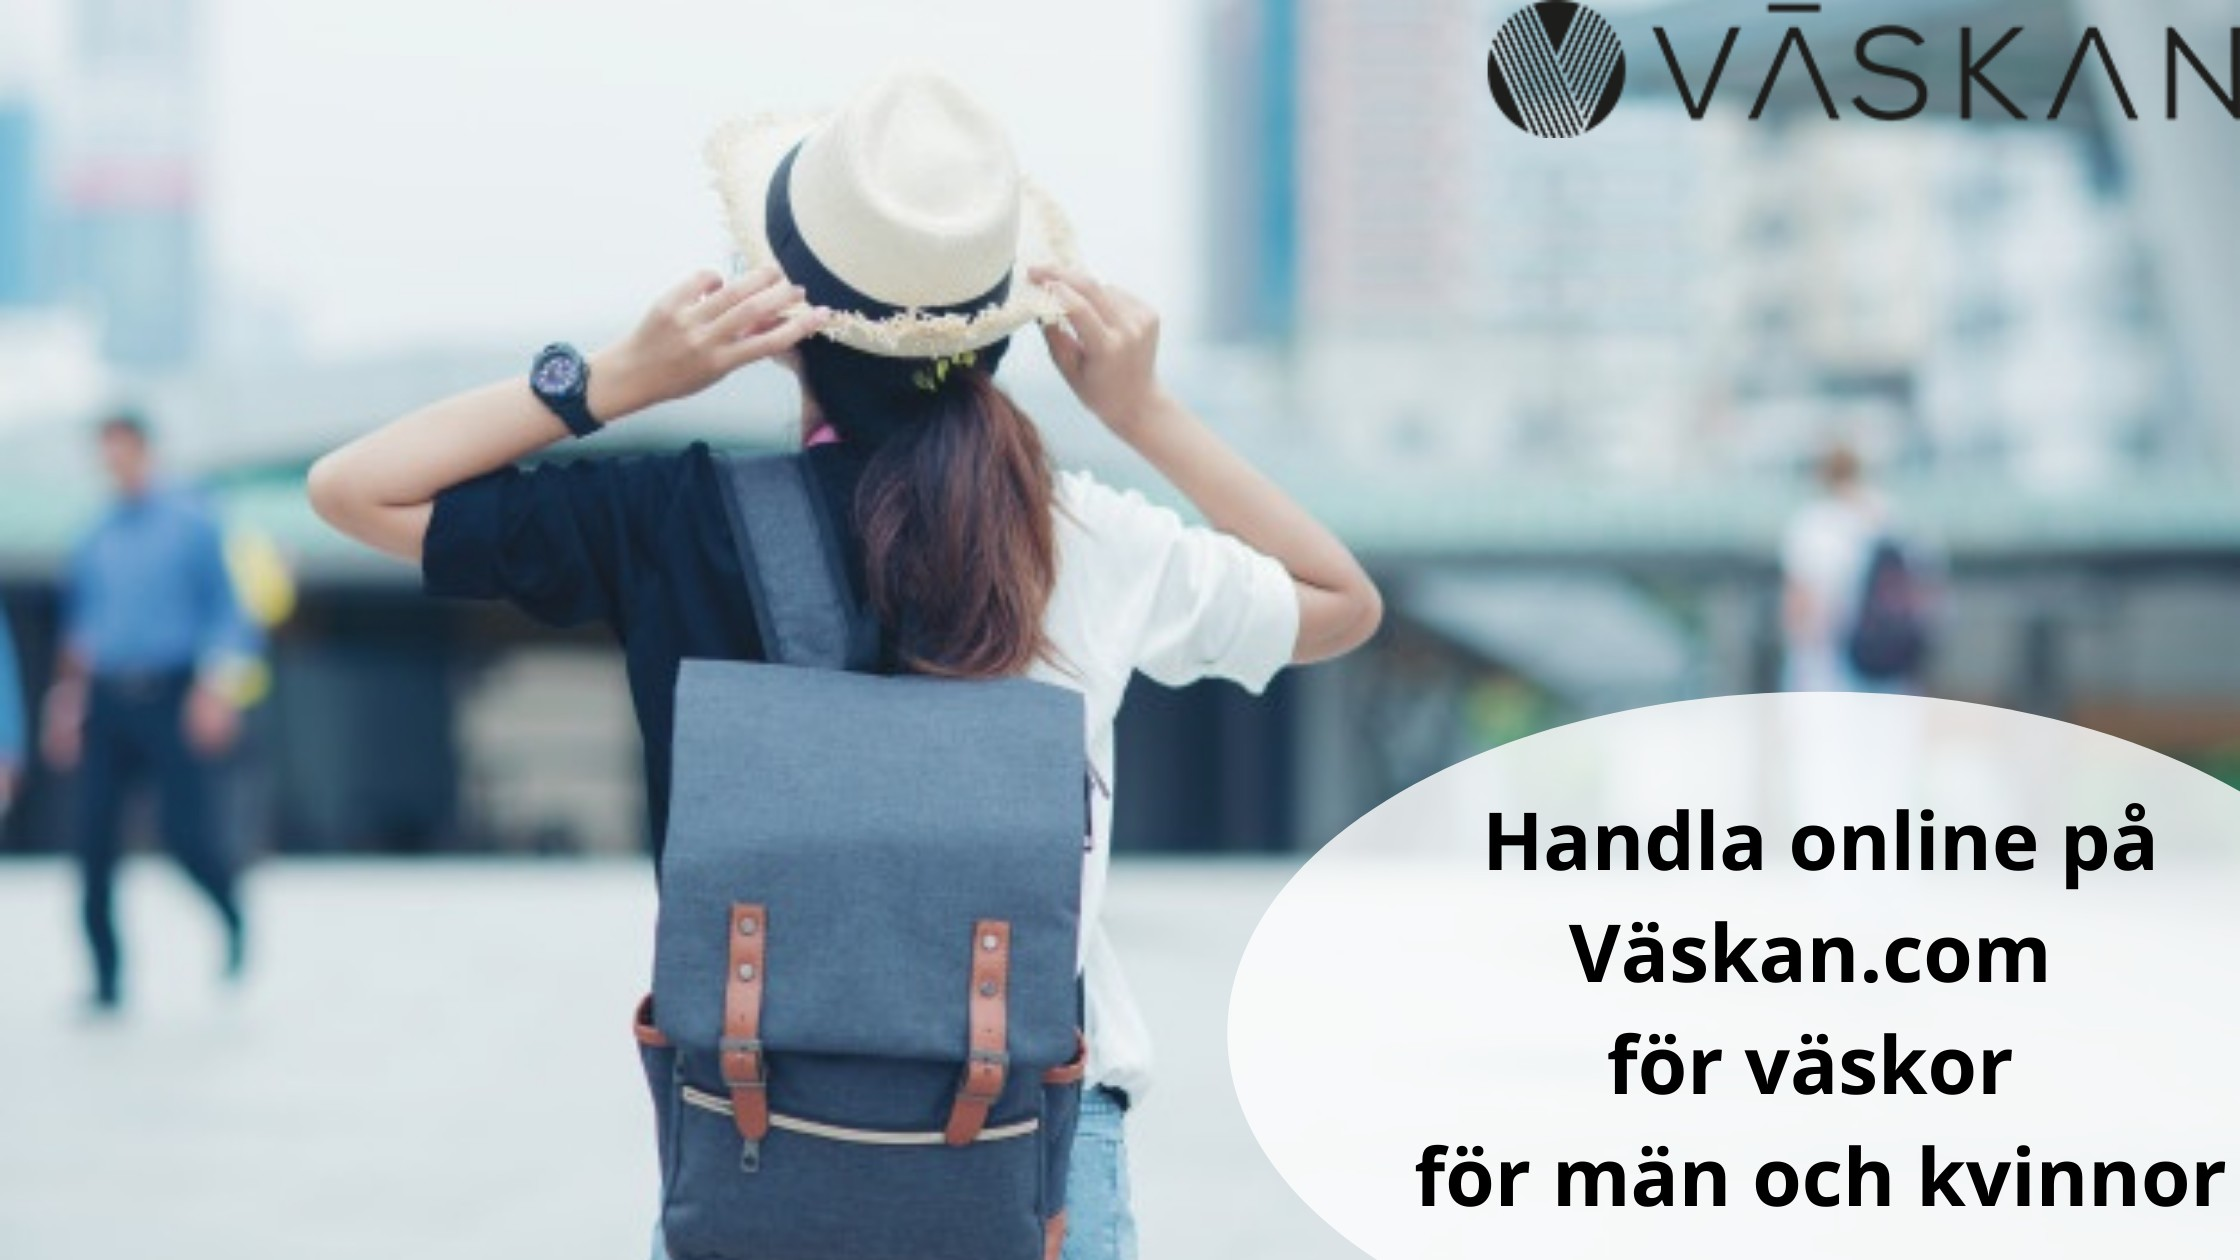 Handla online på Väskan.com för väskor för män och kvinnor